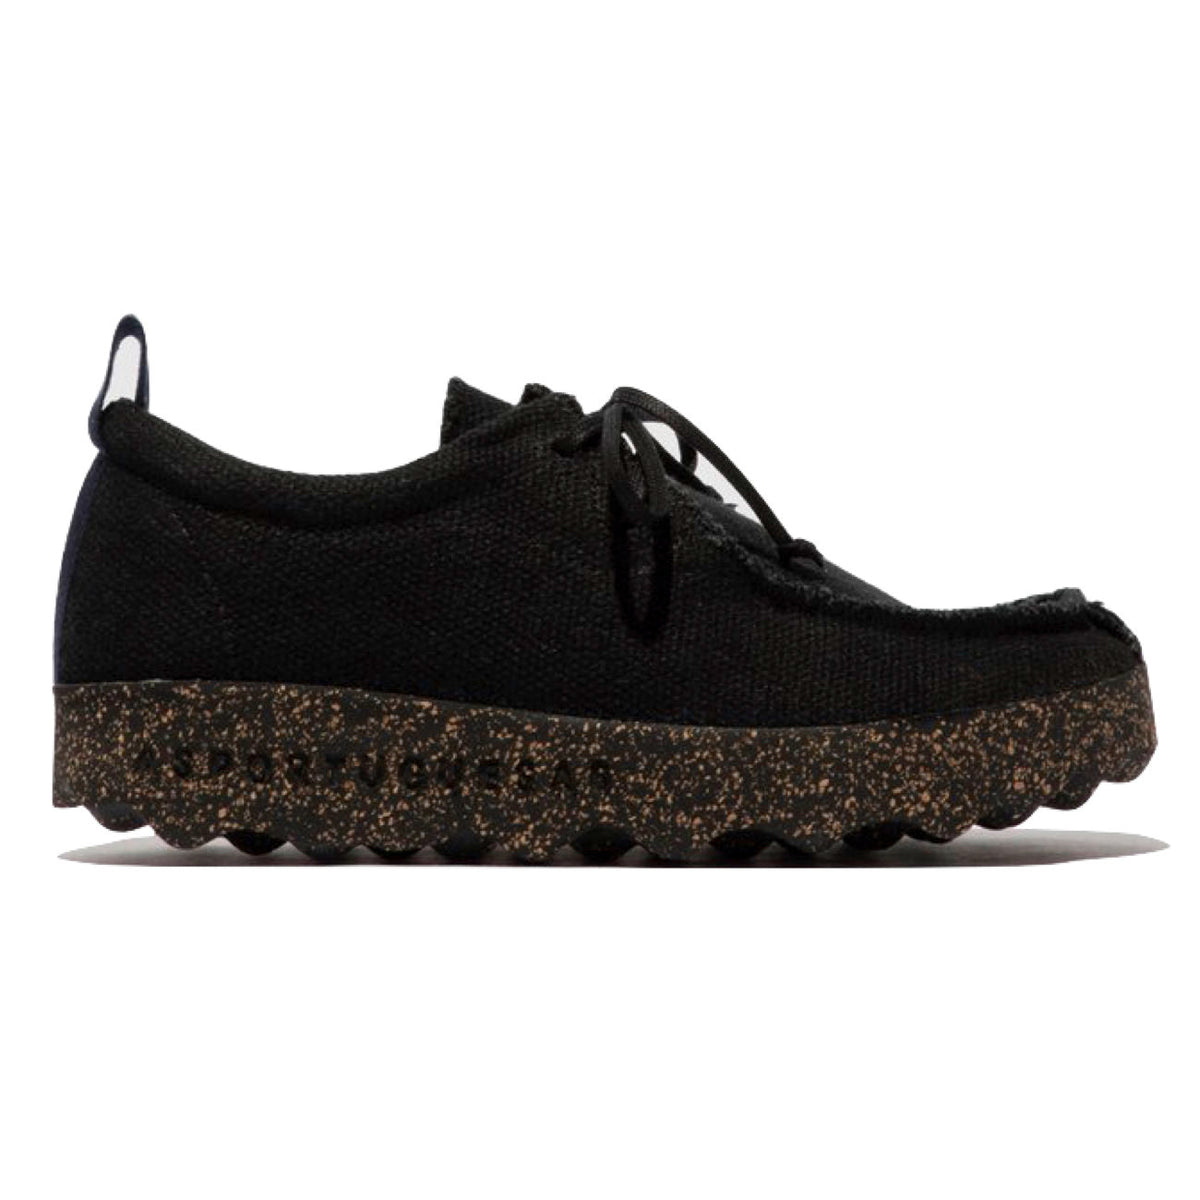 Asportuguesus, AS21 Chat, Laceup Shoes, Black Linen &amp; Black sole Shoes Asportuguesas 